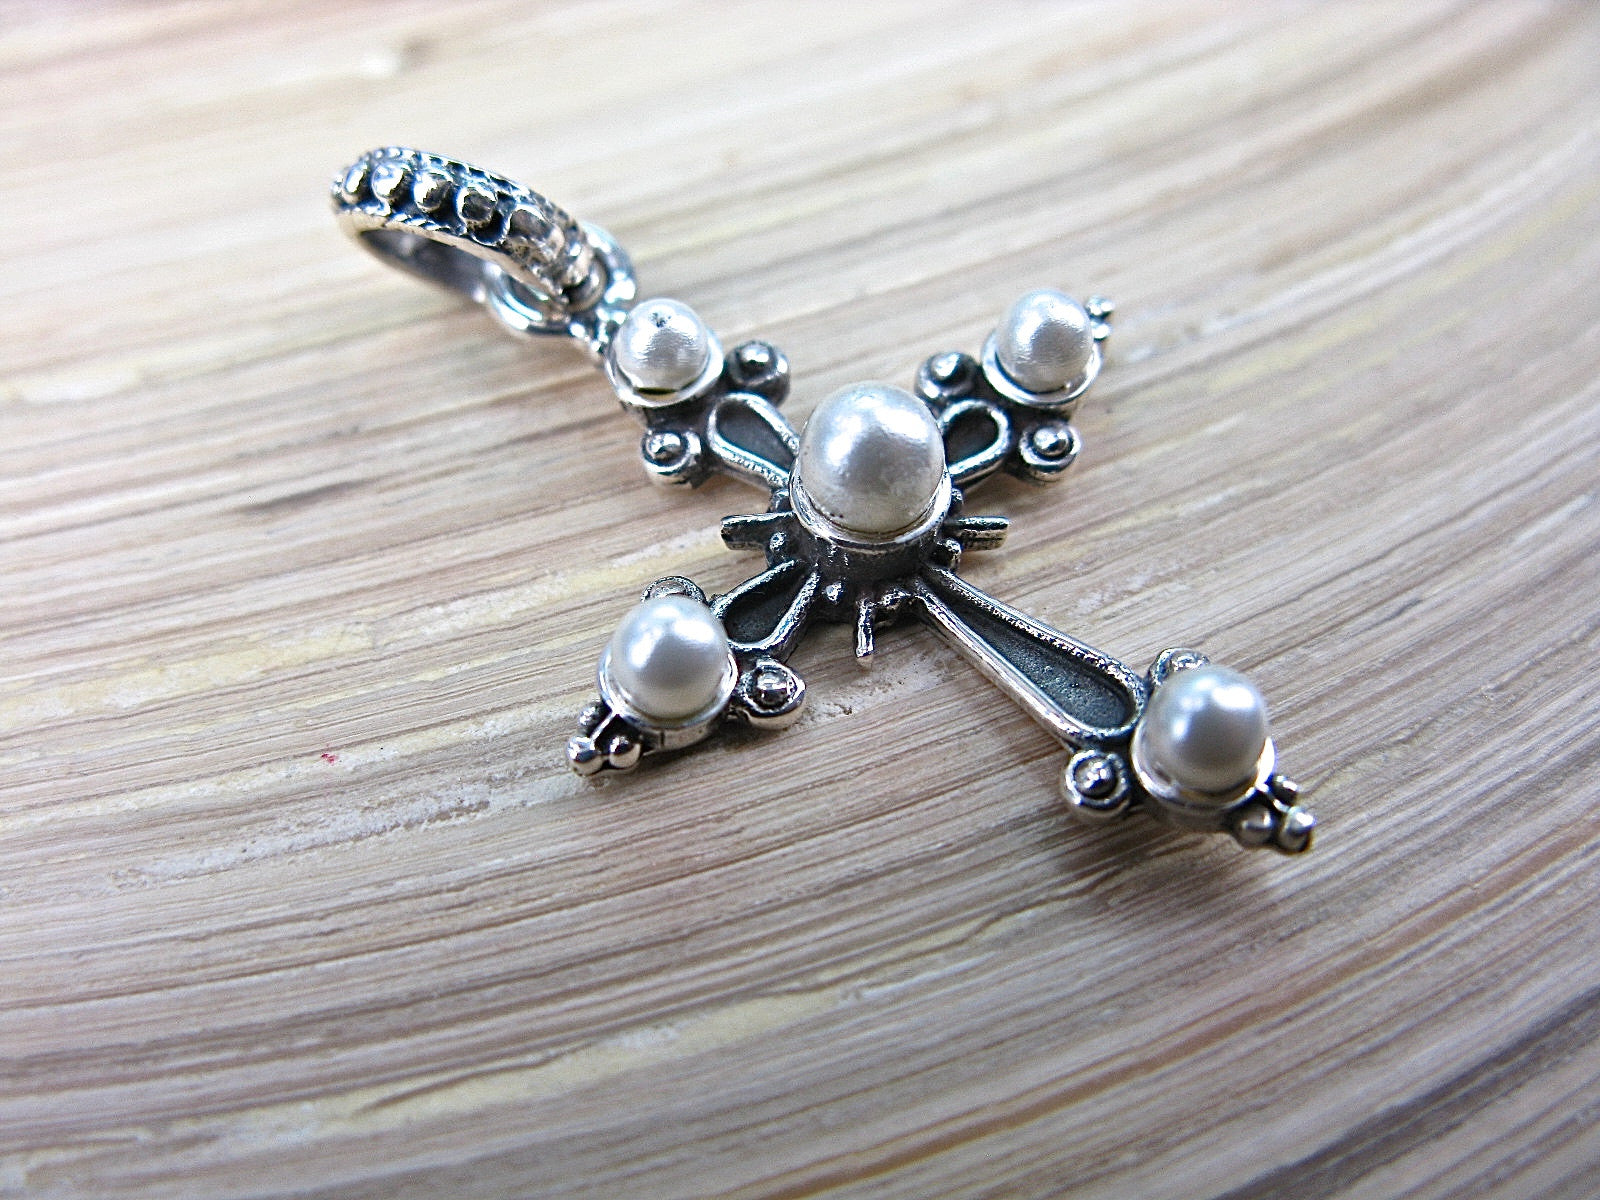 Cross Pearl Oxidized 925 Sterling Silver Pendant Pendant Faith Owl - Faith Owl